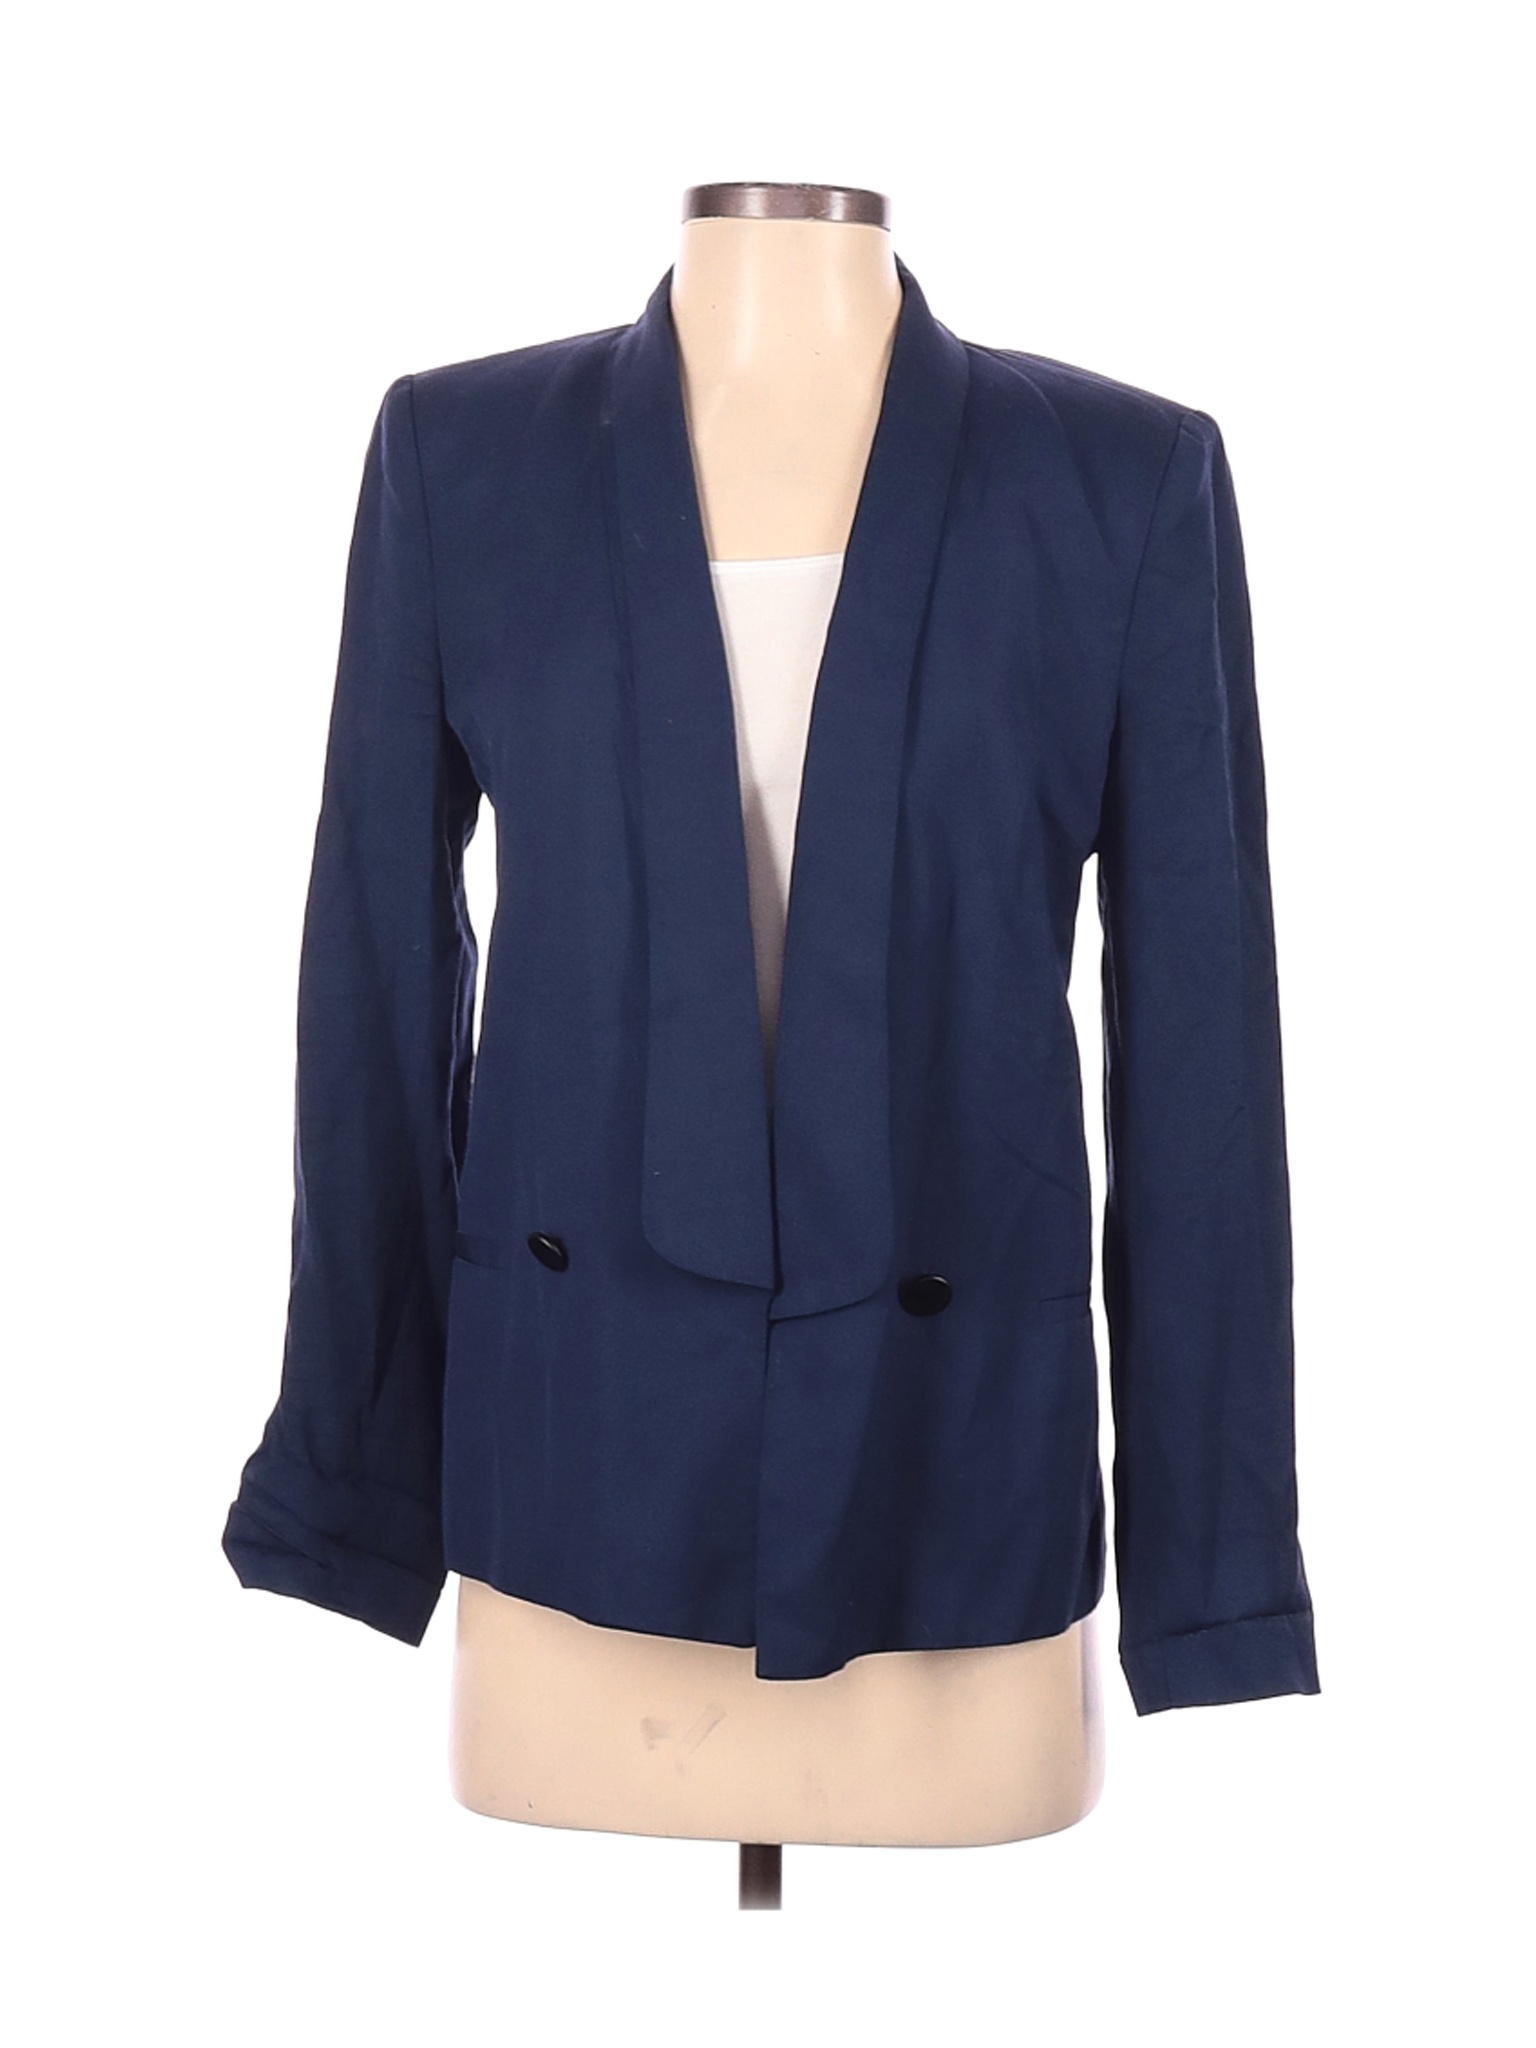 Zara Women Blue Blazer S | eBay